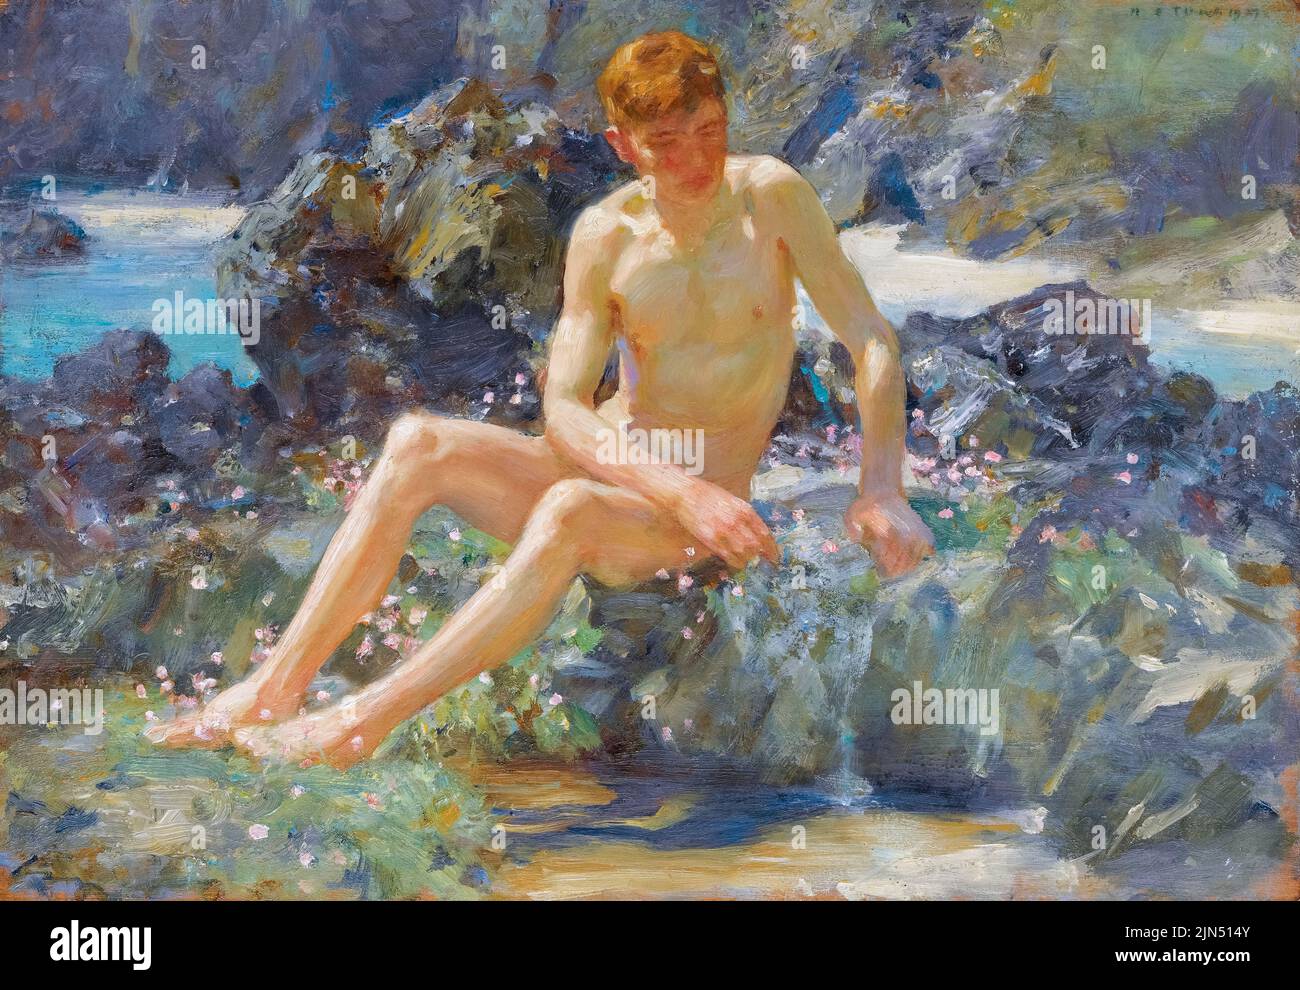 Henry Scott Tuke, desnudo en las rocas, pintura al óleo sobre panel, 1927 Foto de stock